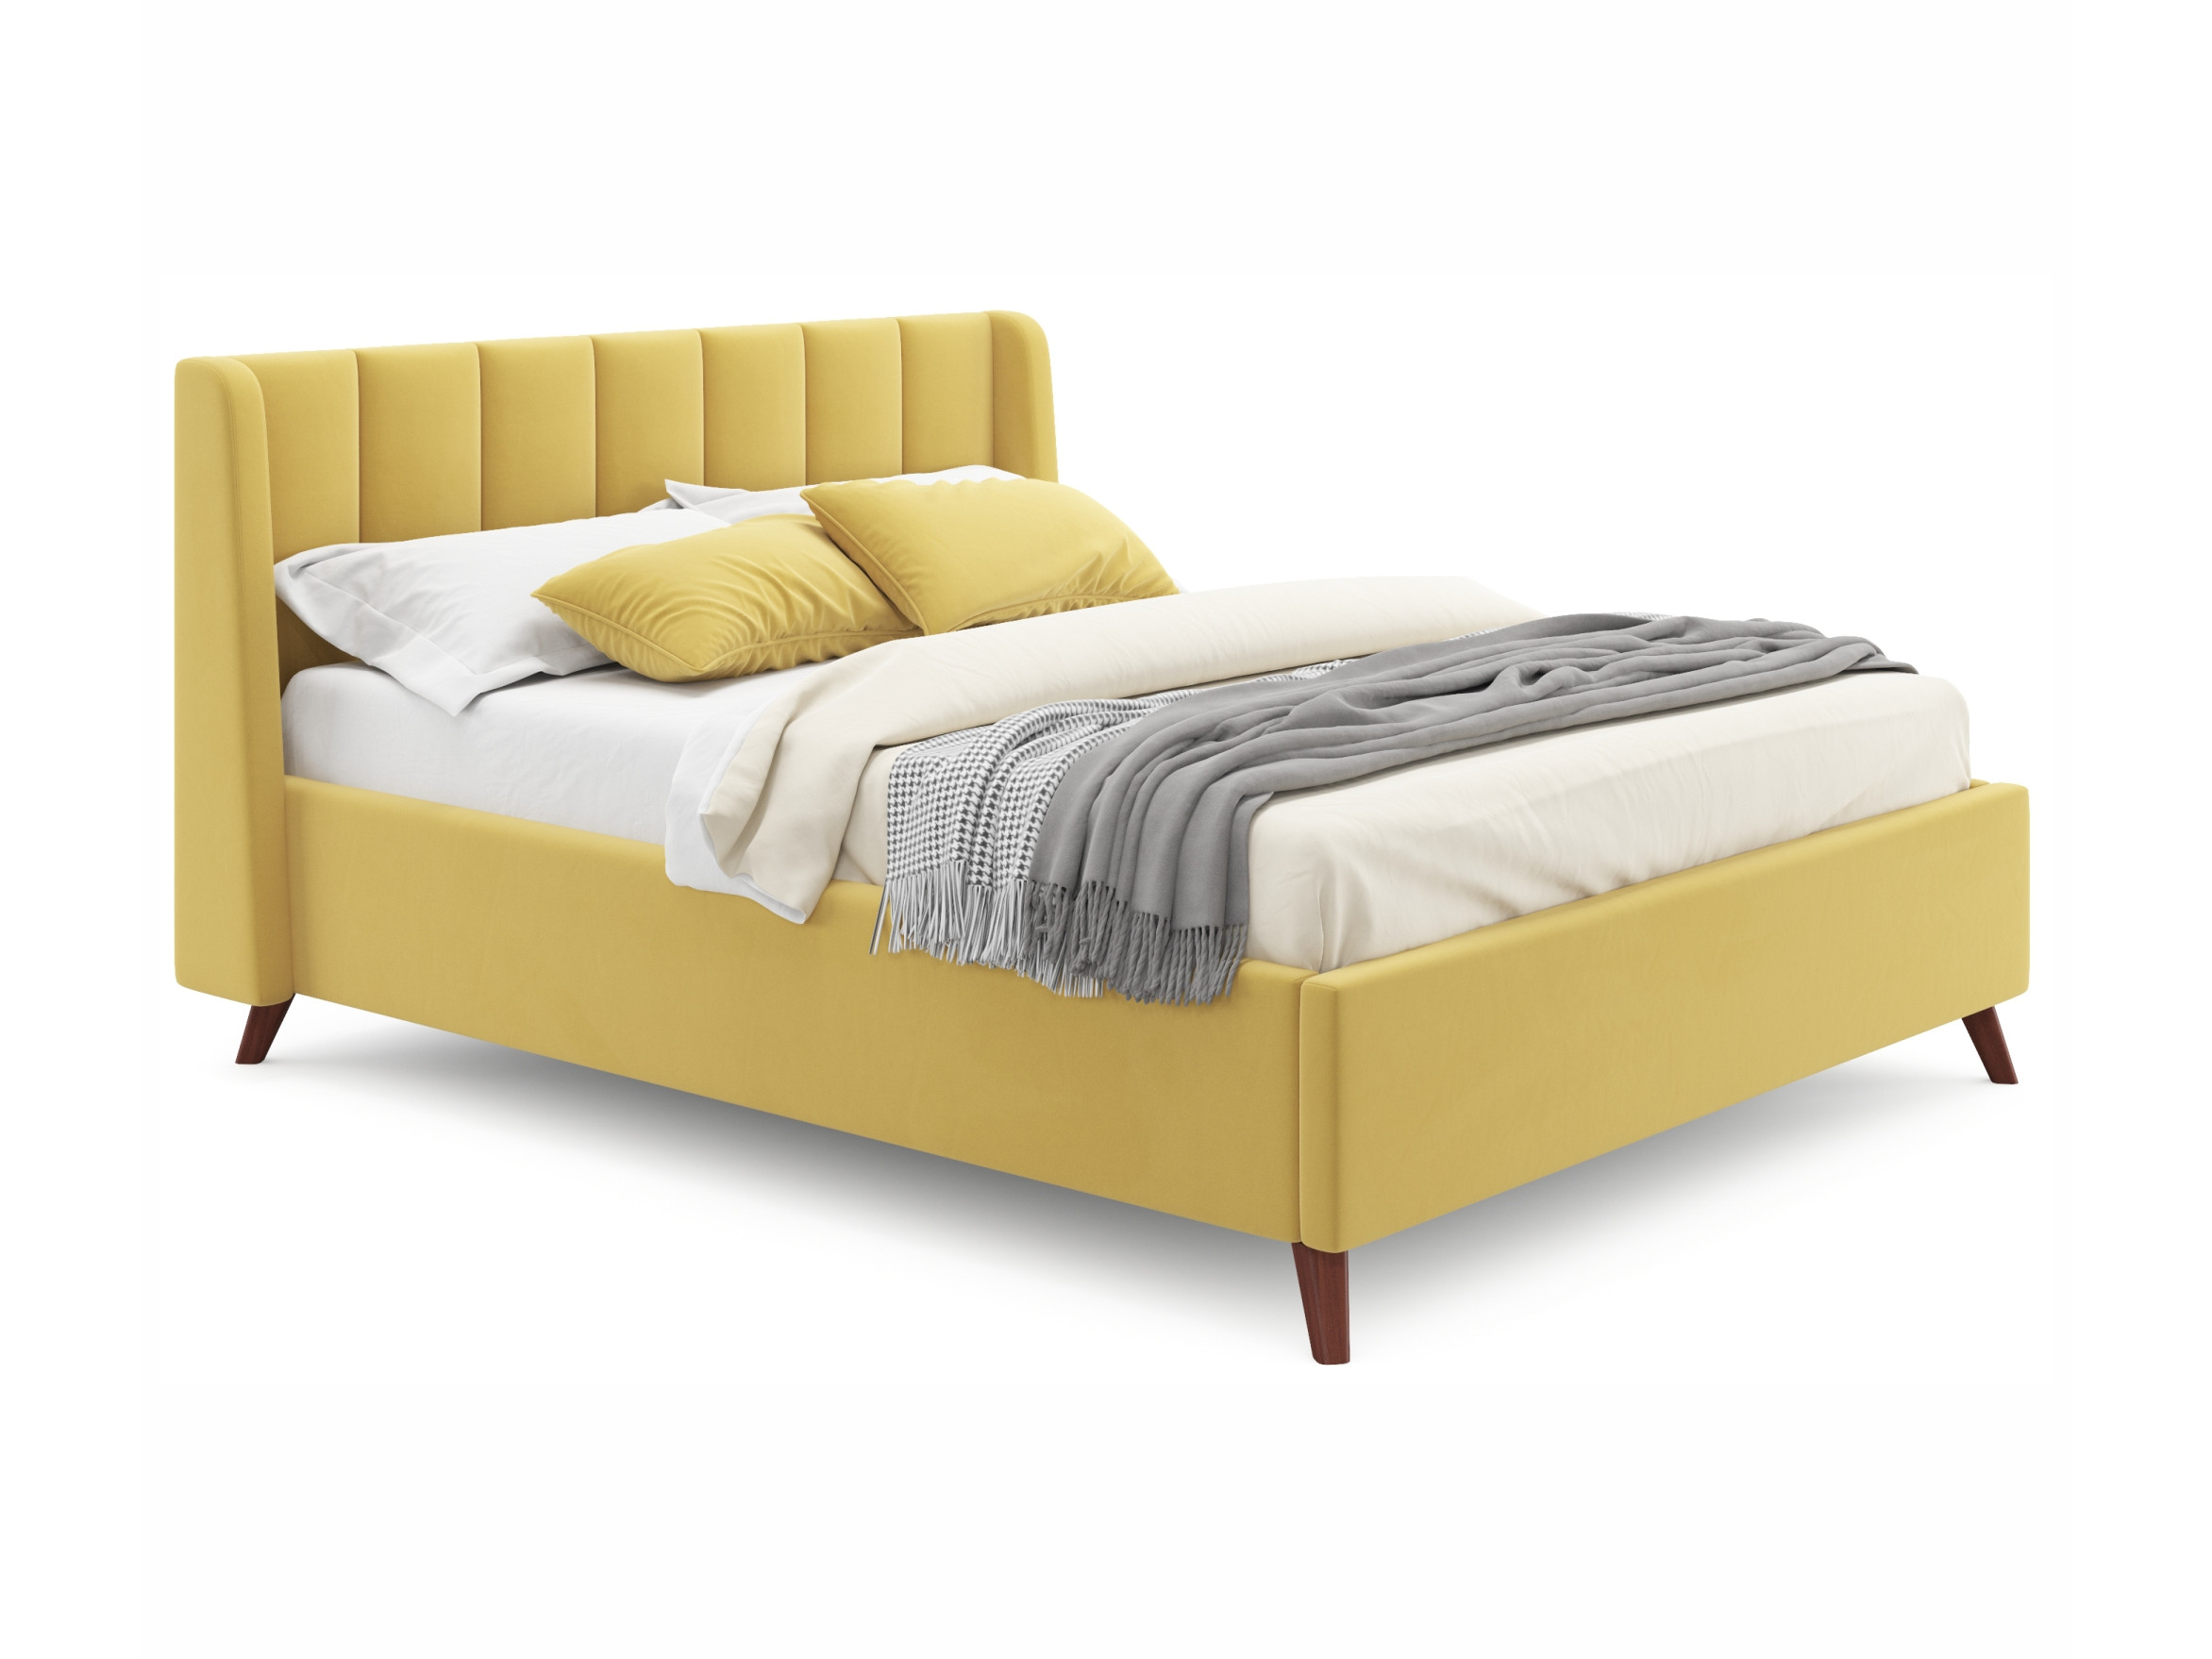 Мягкая кровать Betsi 1600 желтая с подъемным механизмом желтый, Желтый, Велюр, ДСП